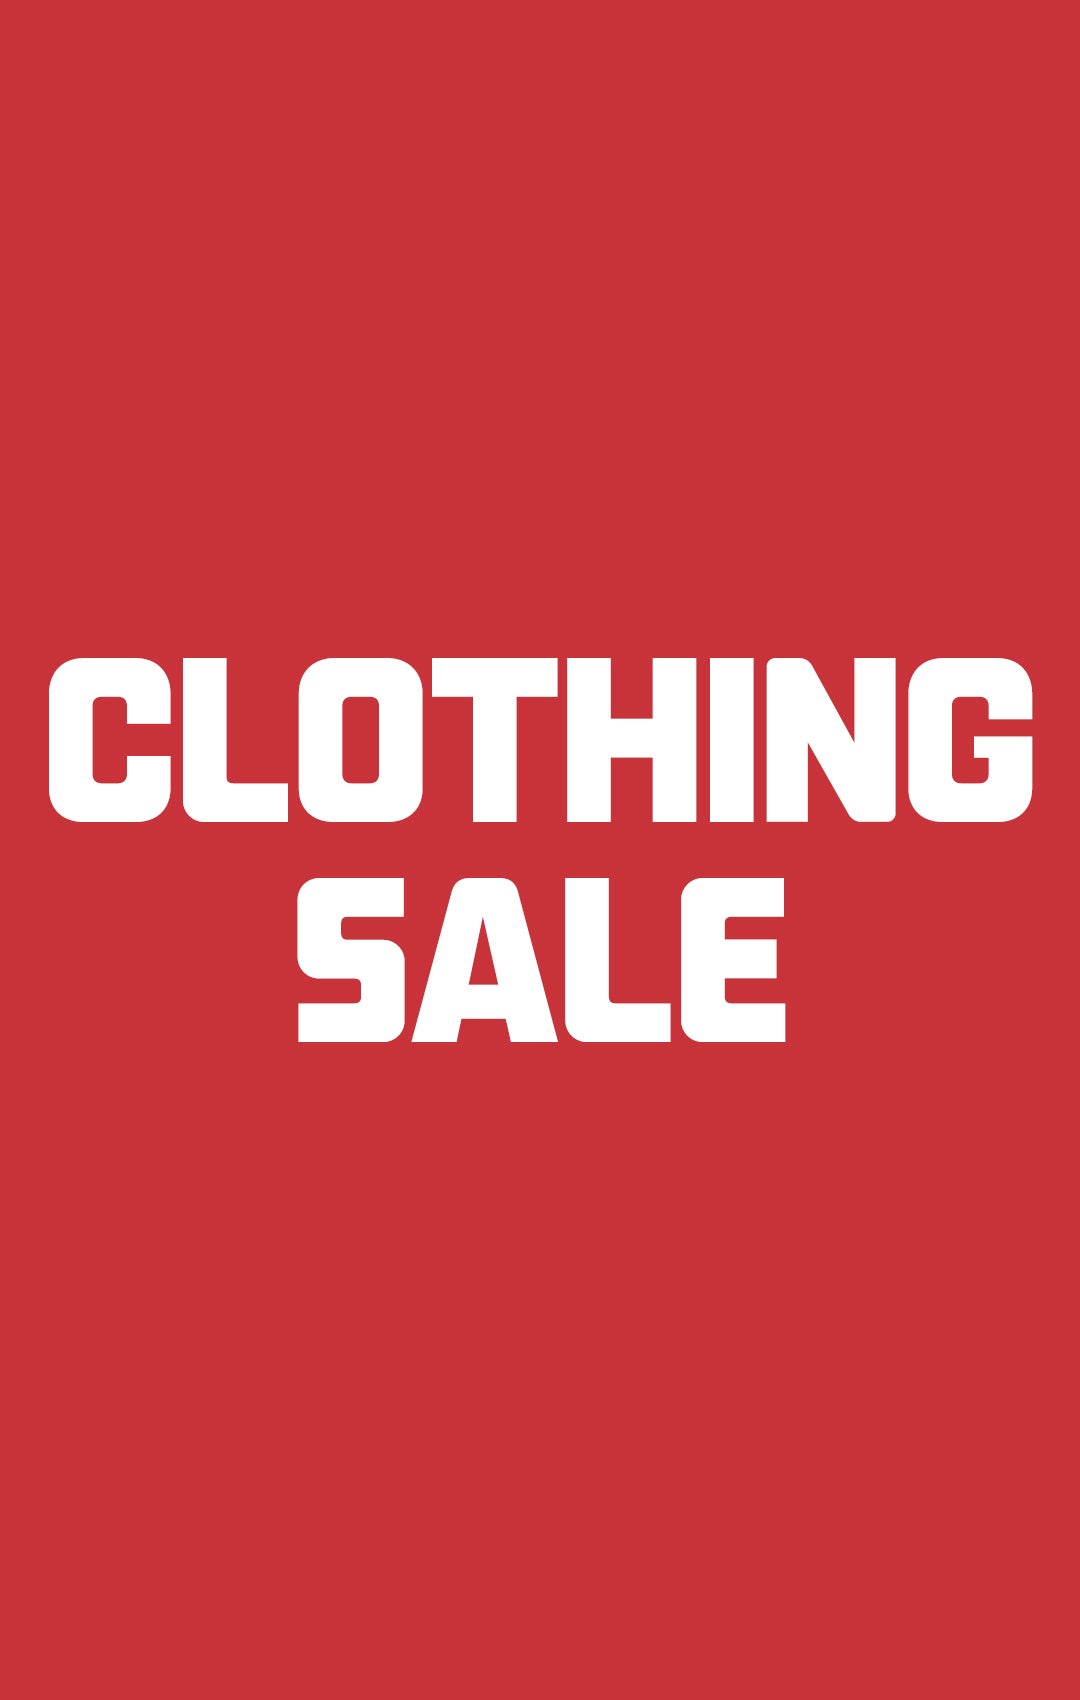 Women's Sale, Clothing, Shoes & Accessories Sale